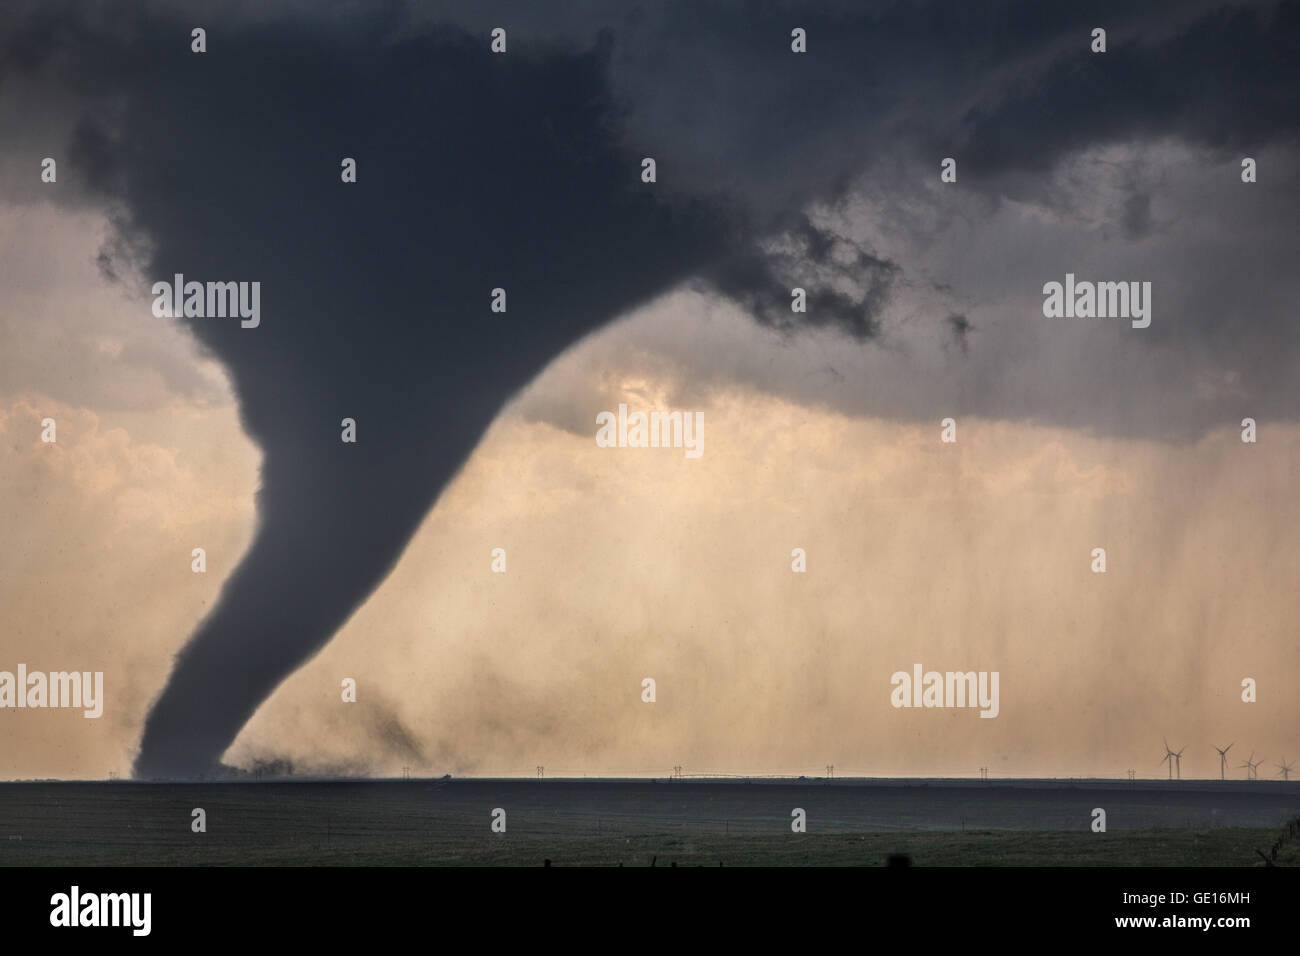 Un tornado desciende de un supercell cerca de Dodge City, Kansas, 24 de mayo de 2016. generadores eólicos están en el fondo. Foto de stock